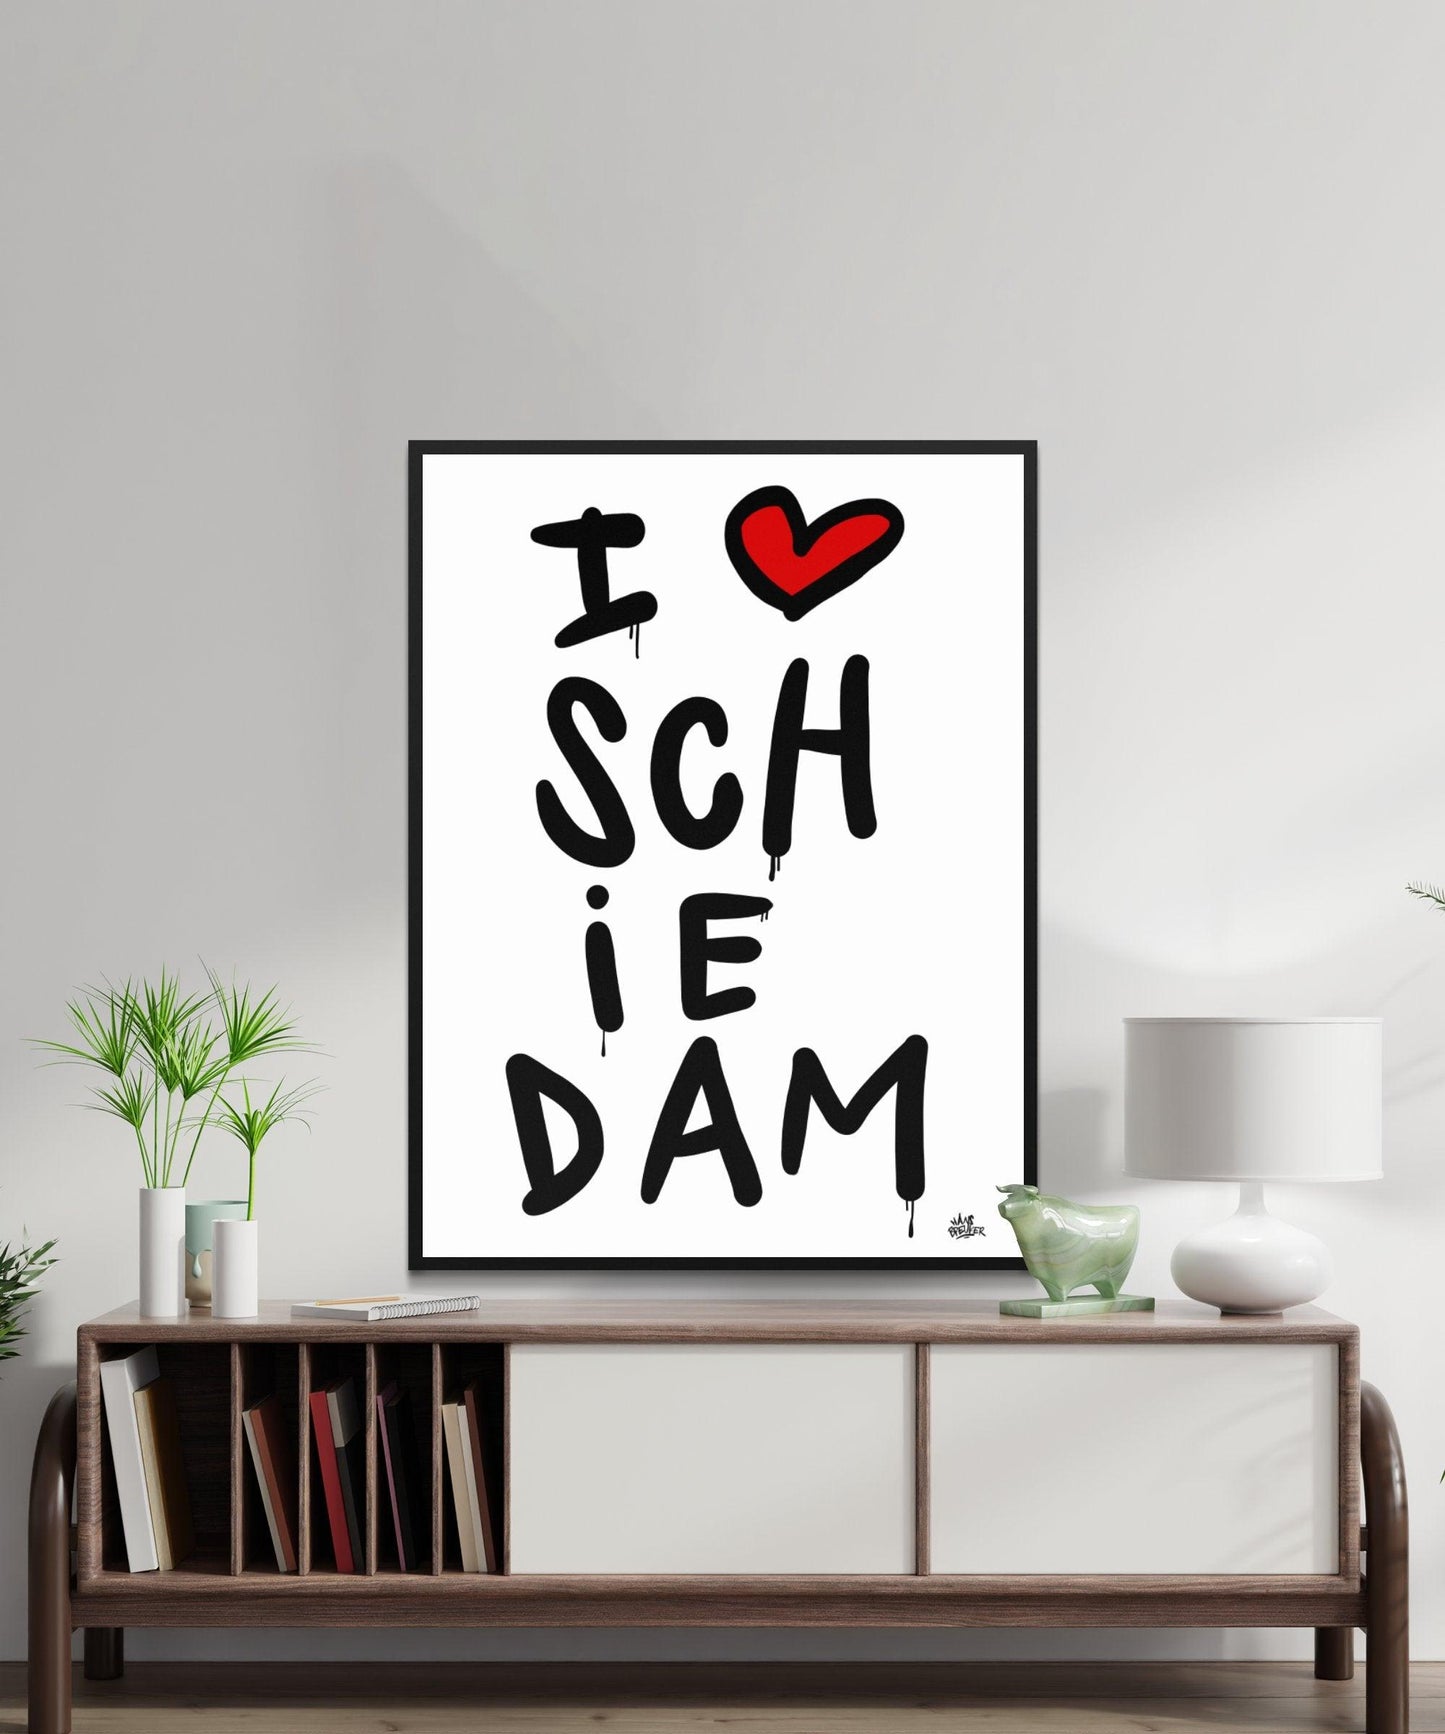 Poster Schiedam - Hans Breuker